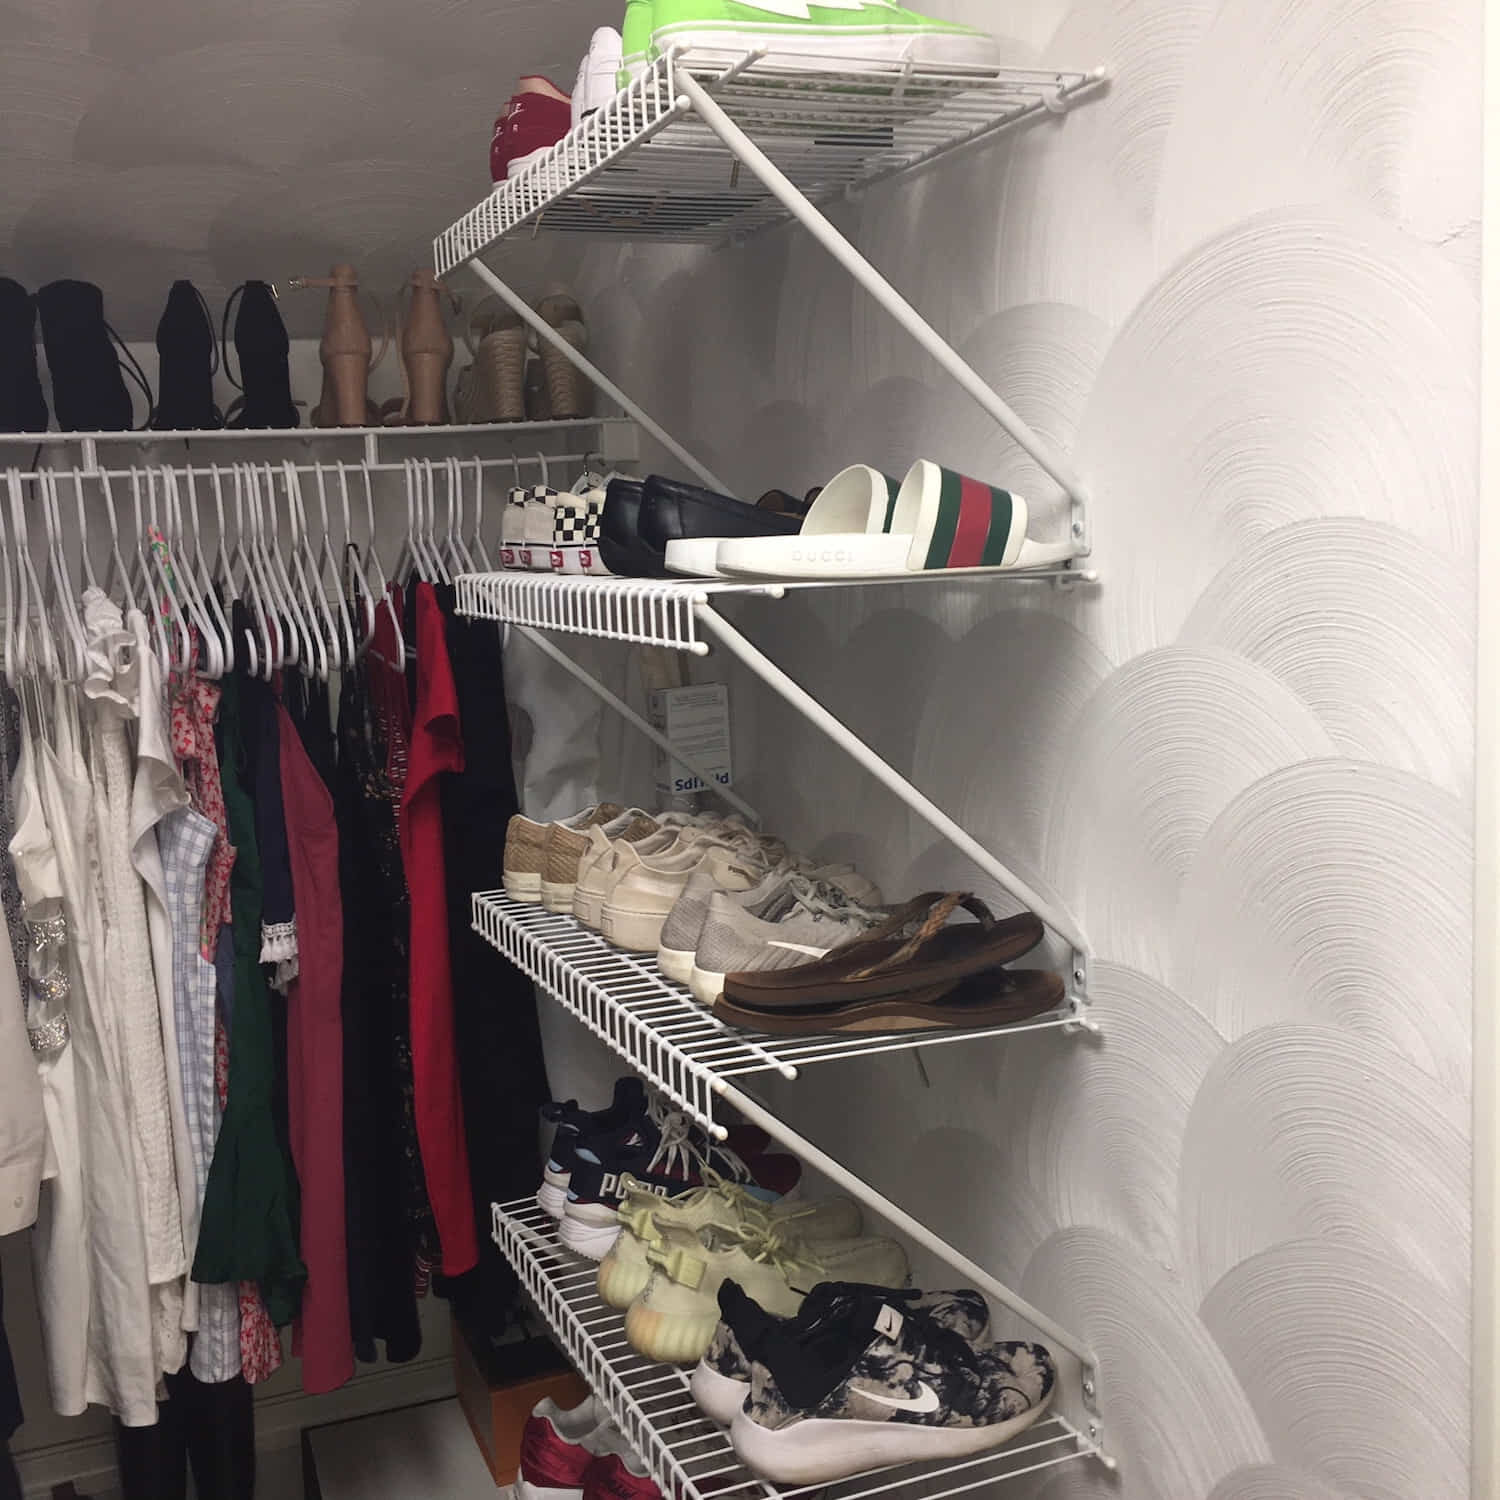 Closet Shelves:  After